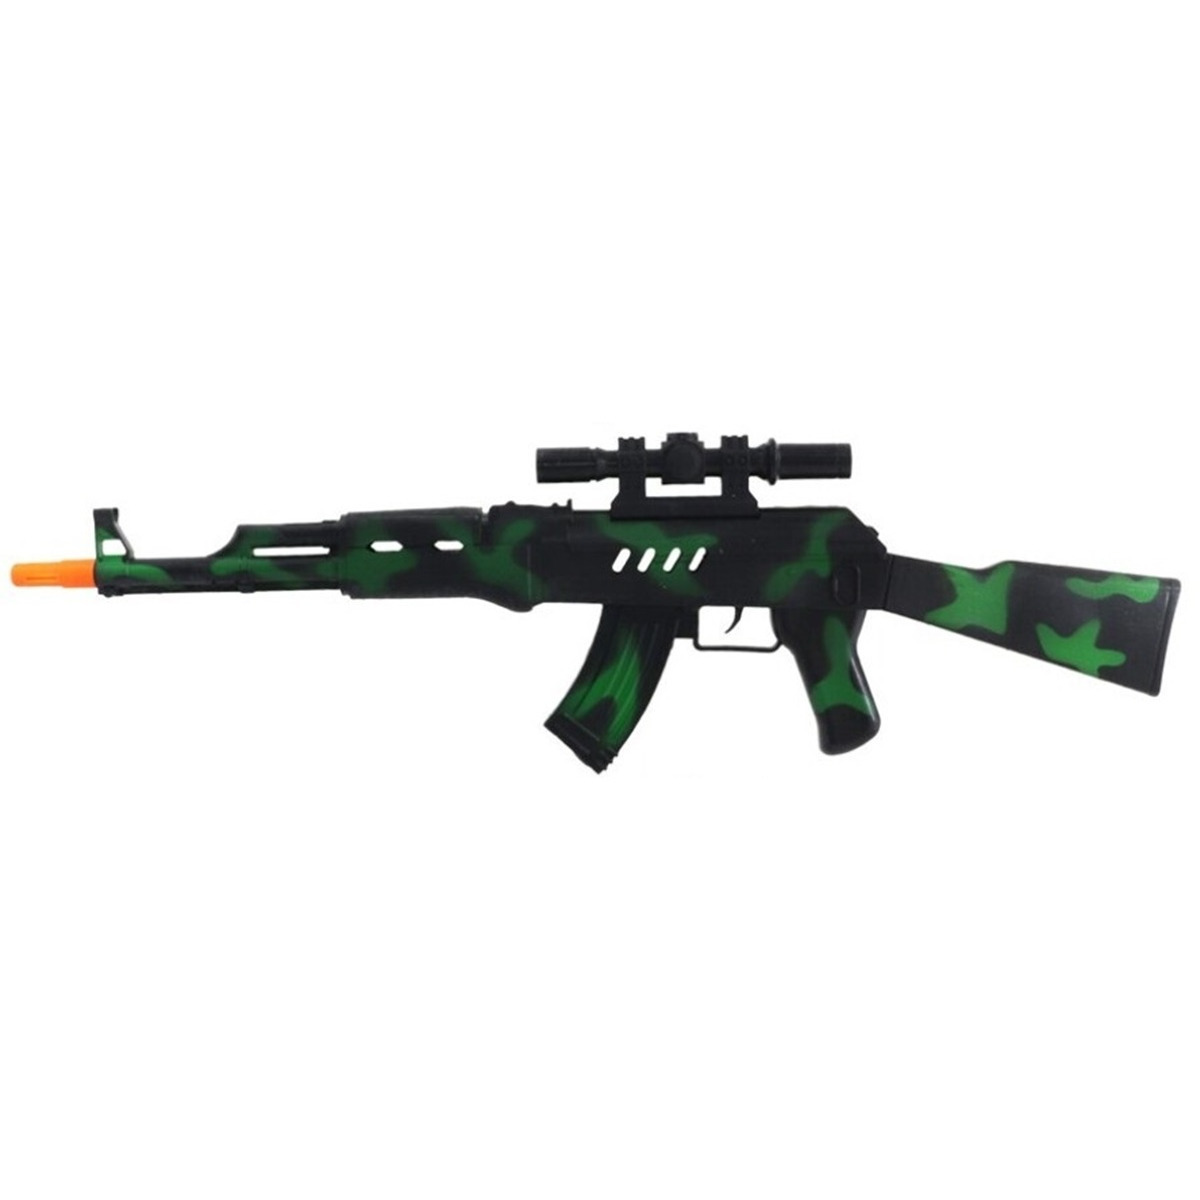 Verkleed speelgoed Politie-soldaten geweer machinegeweer zwart-groen plastic 69 cm